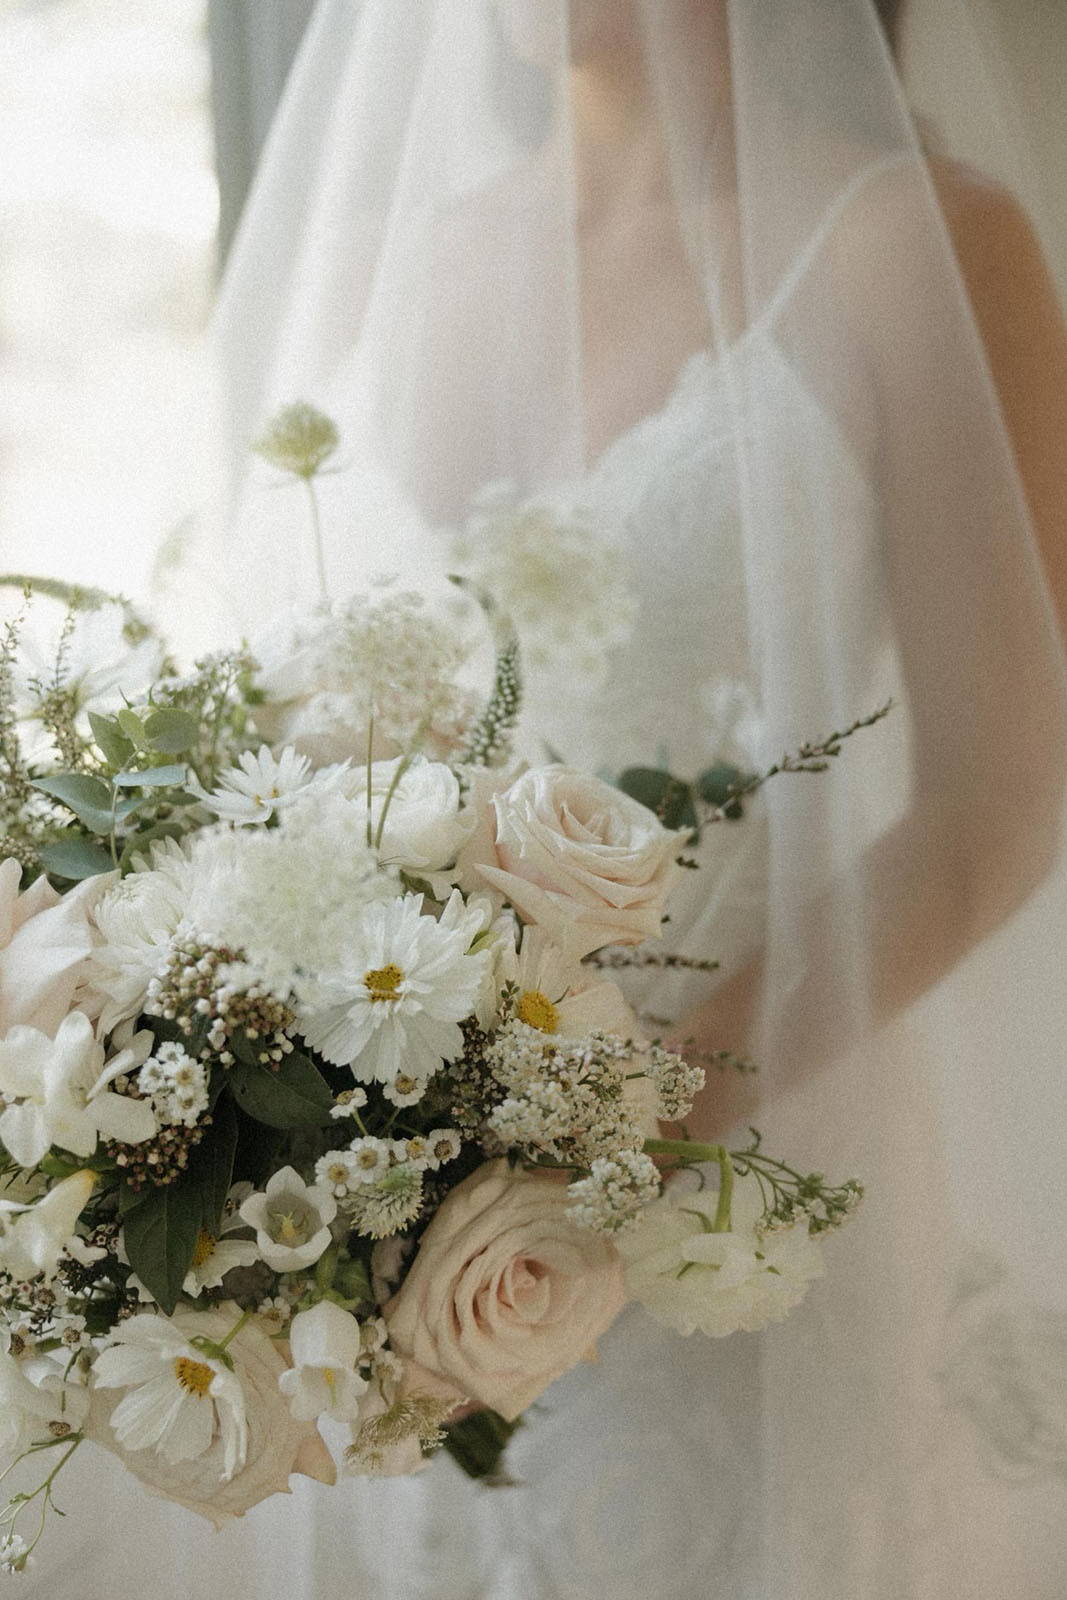 Bride, holding a flower bouquet toss